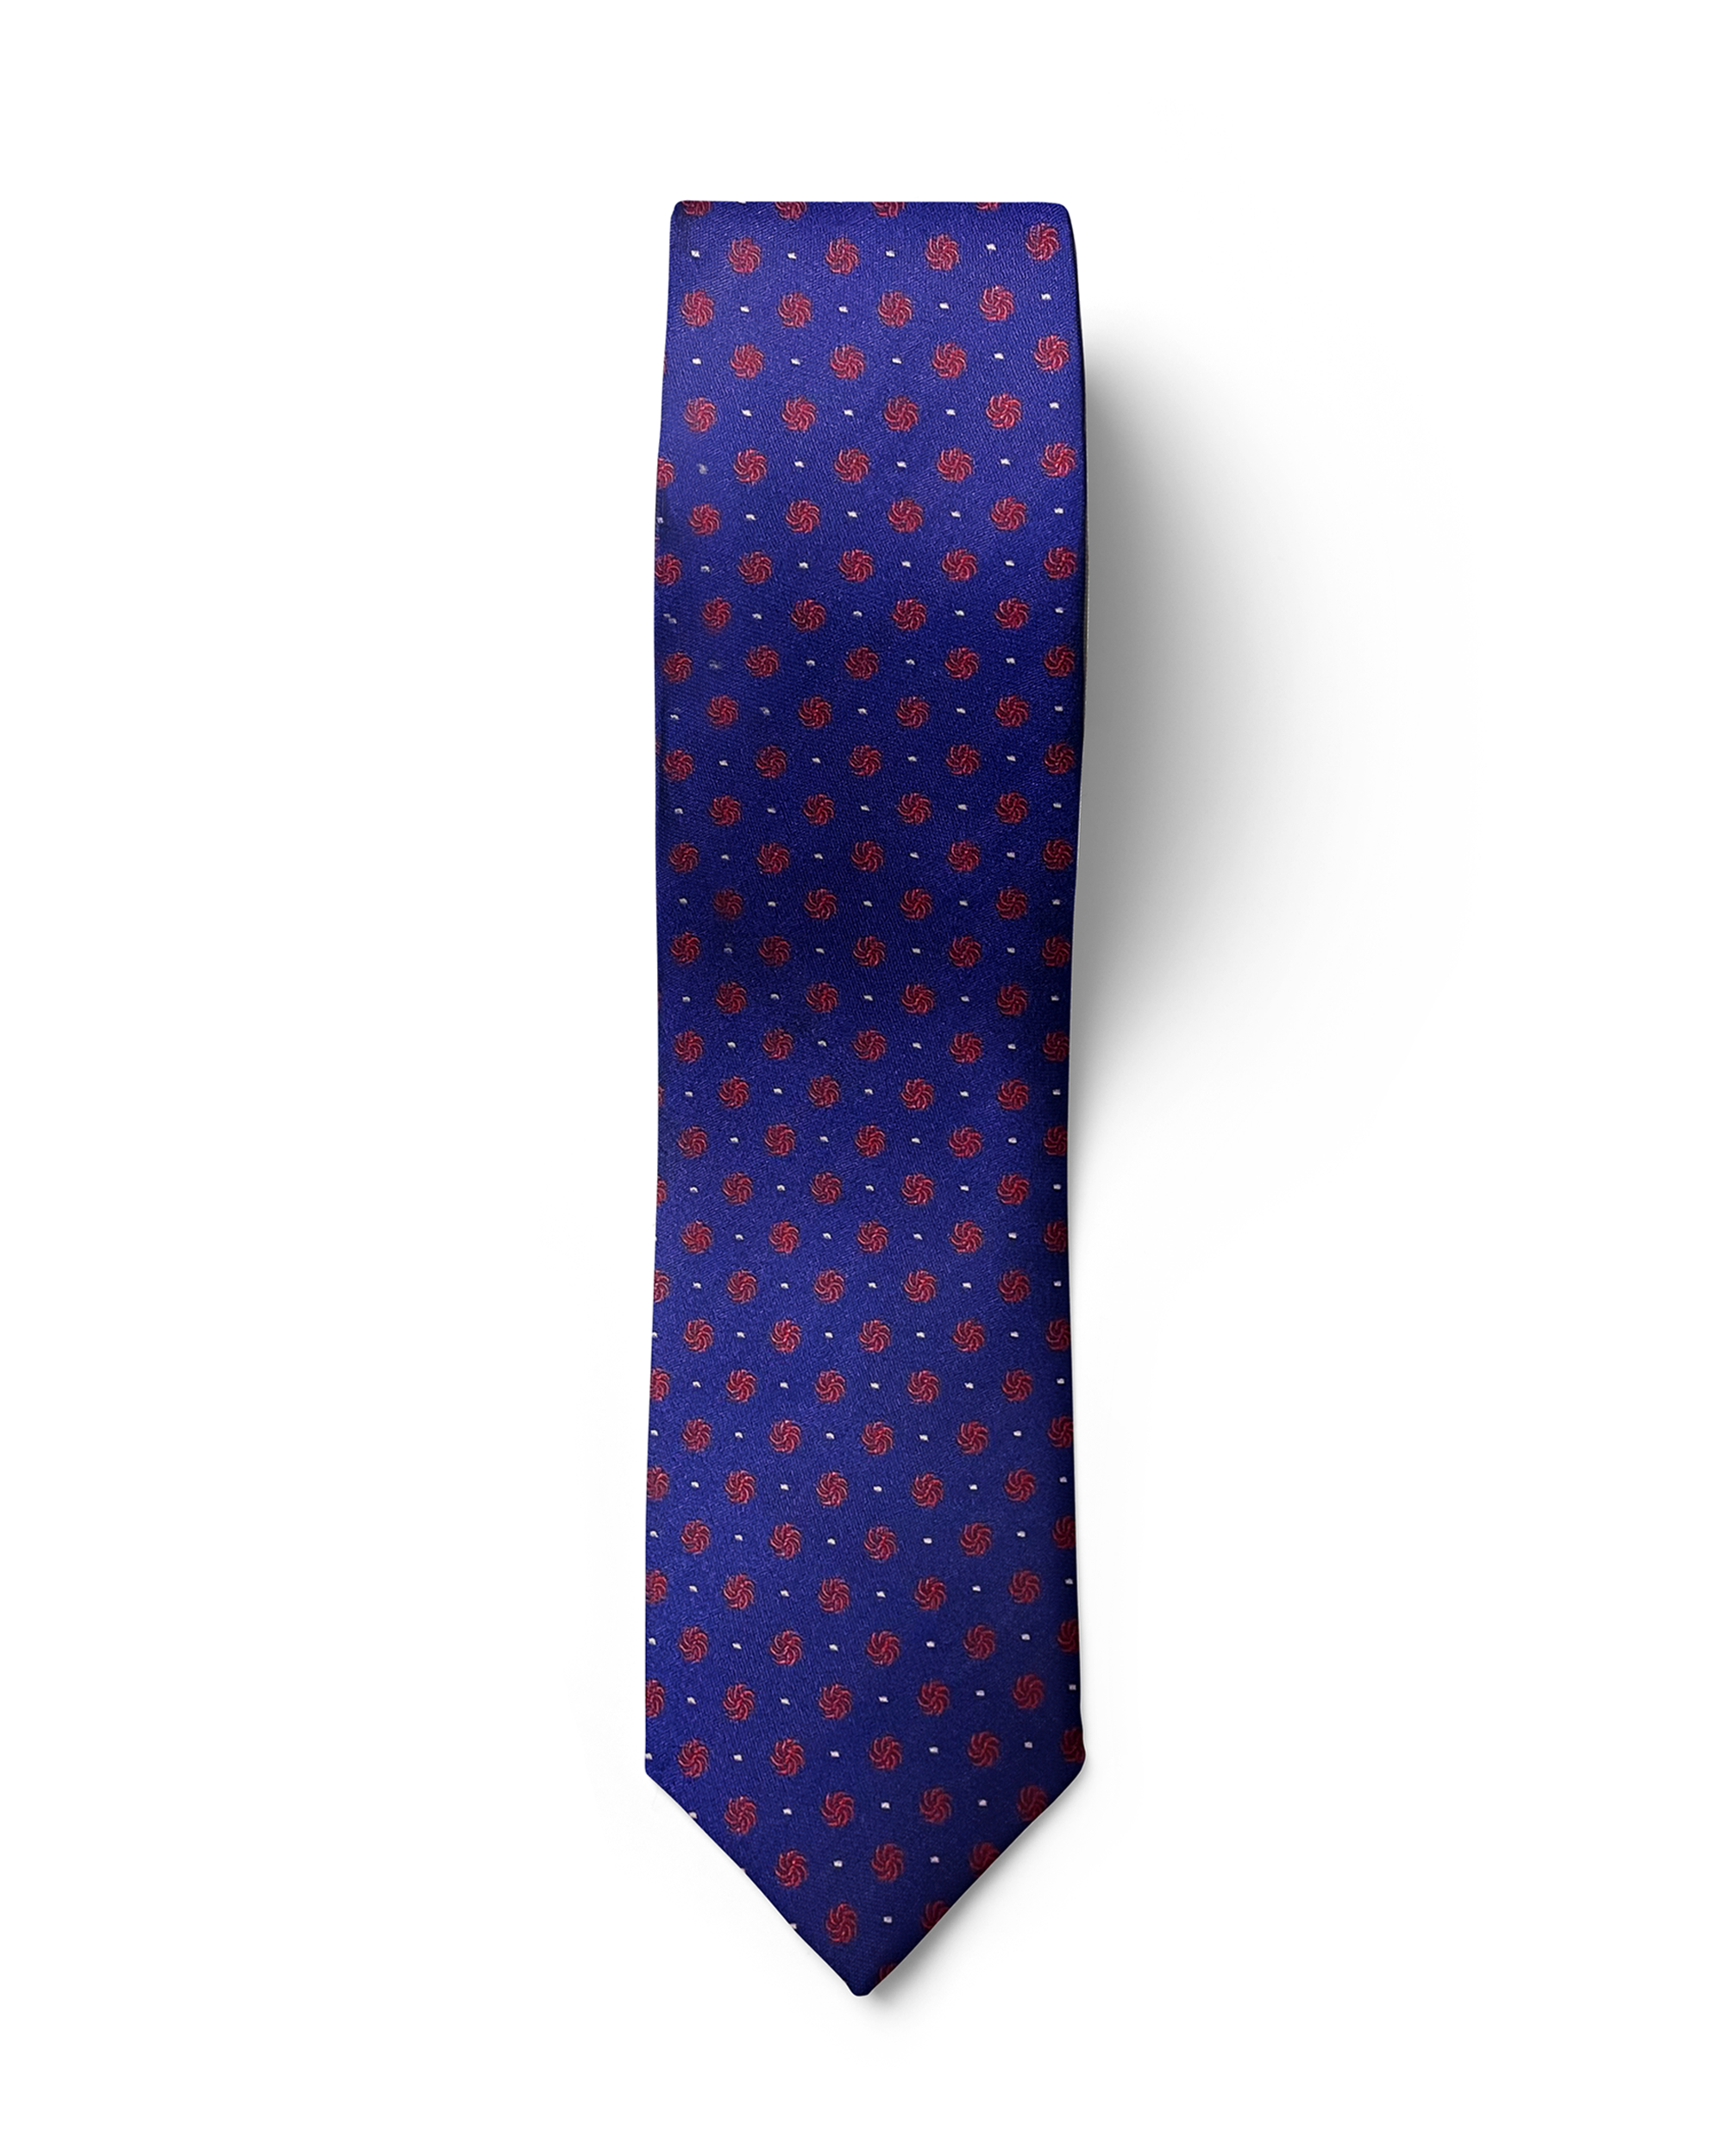 ჟაკარდის აბრეშუმის ჰალსტუხი „ბორჯღალი“ (ლურჯი)